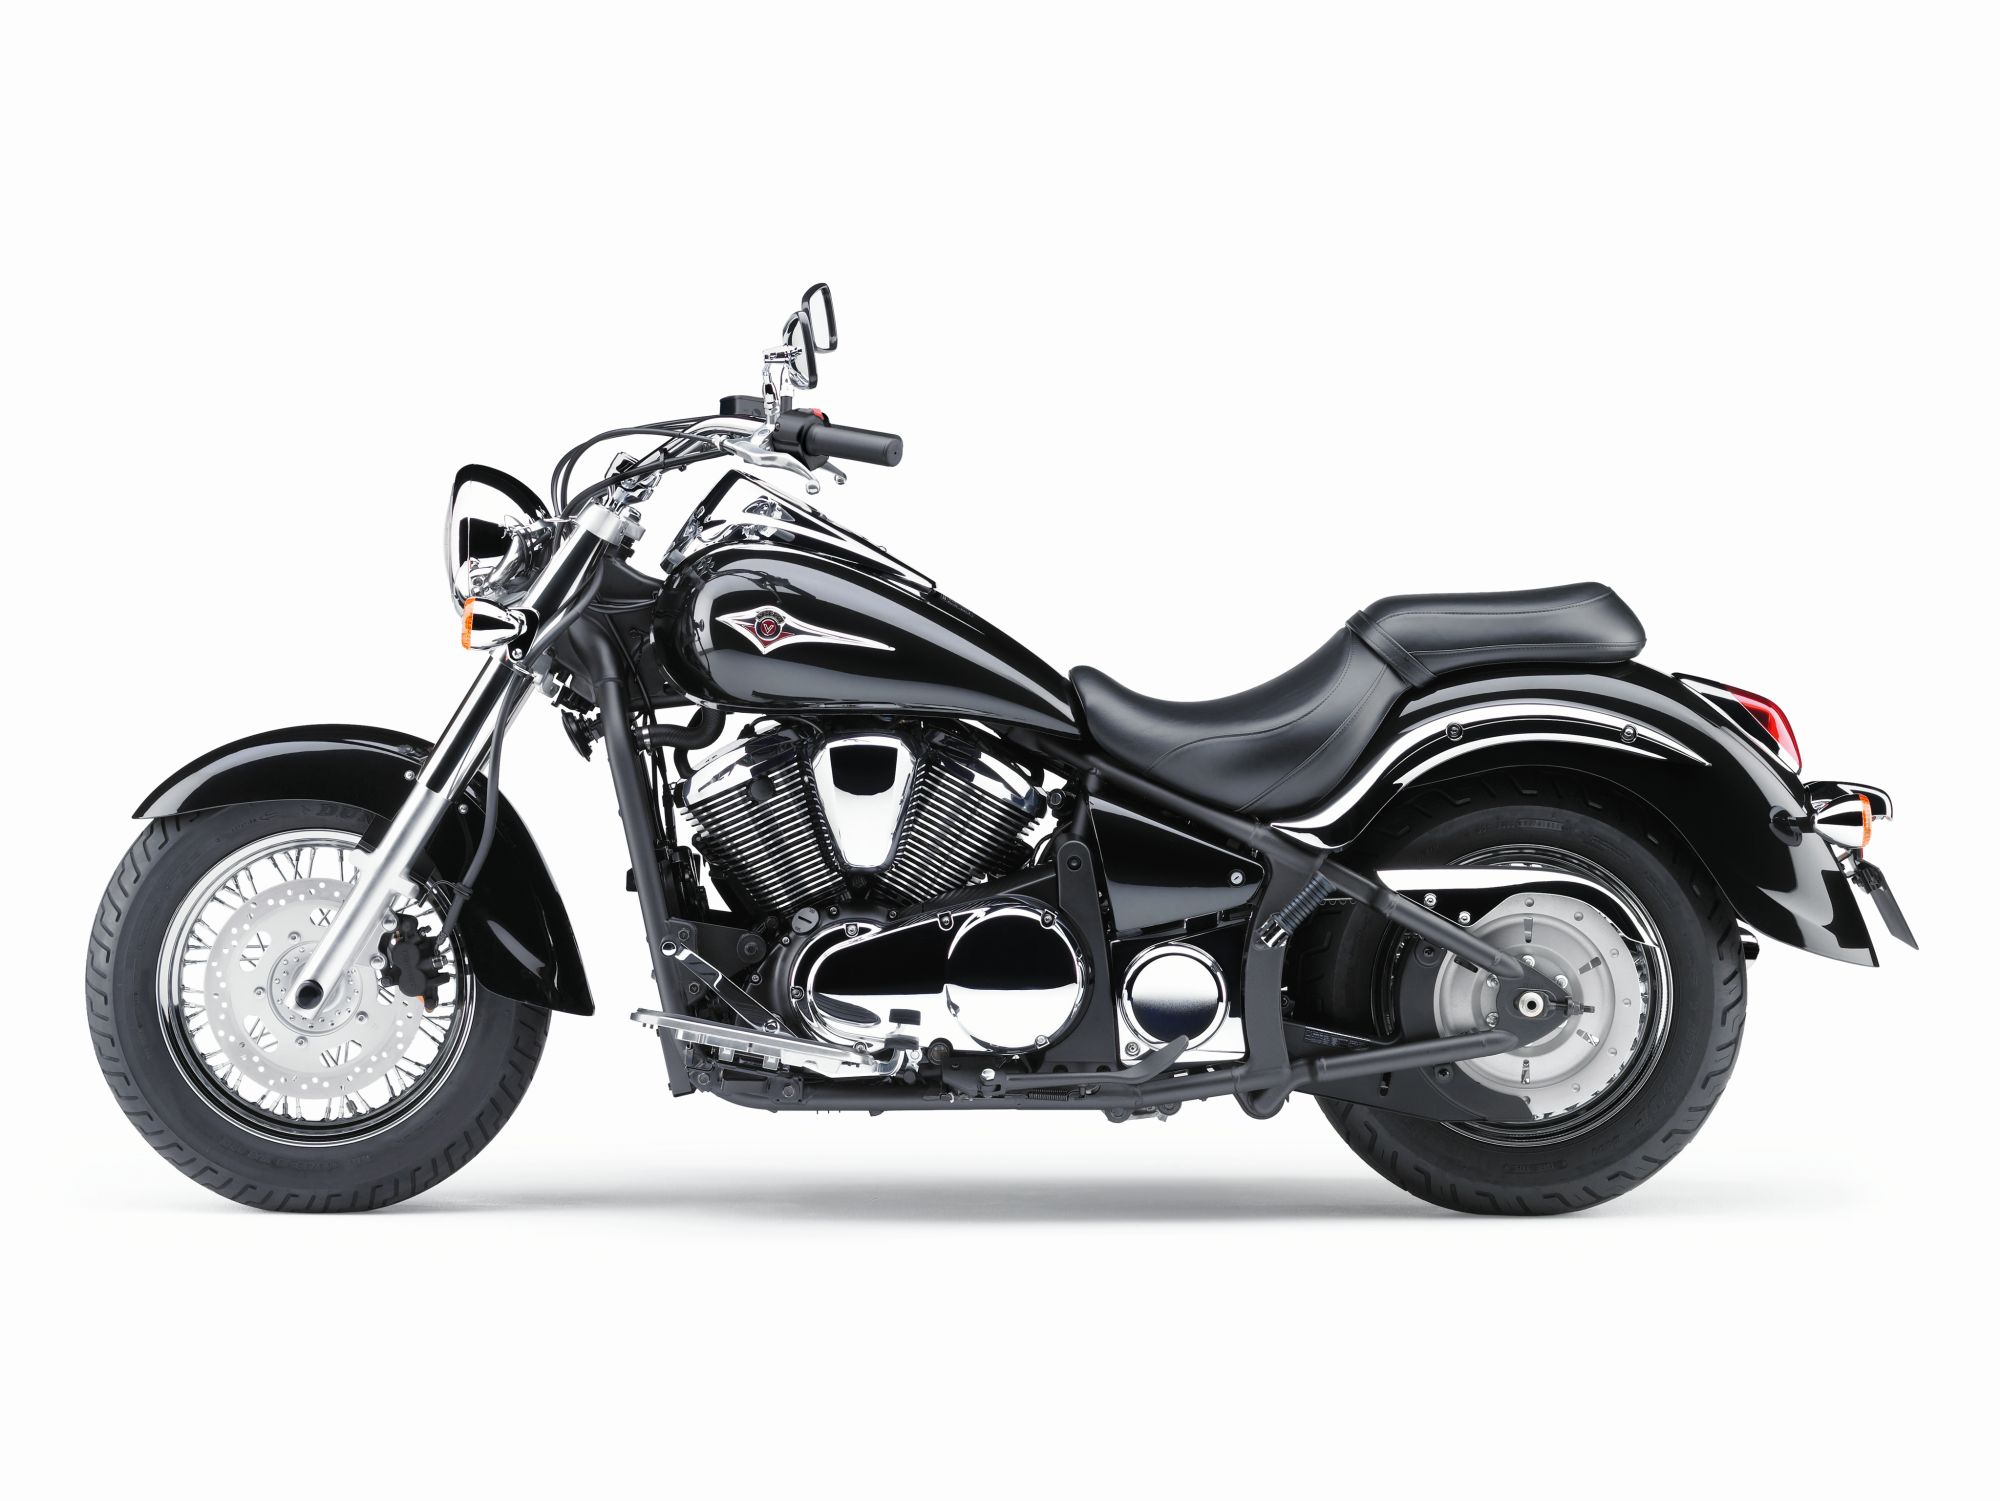 Gebrauchte neue Kawasaki 900 Classic Motorräder kaufen